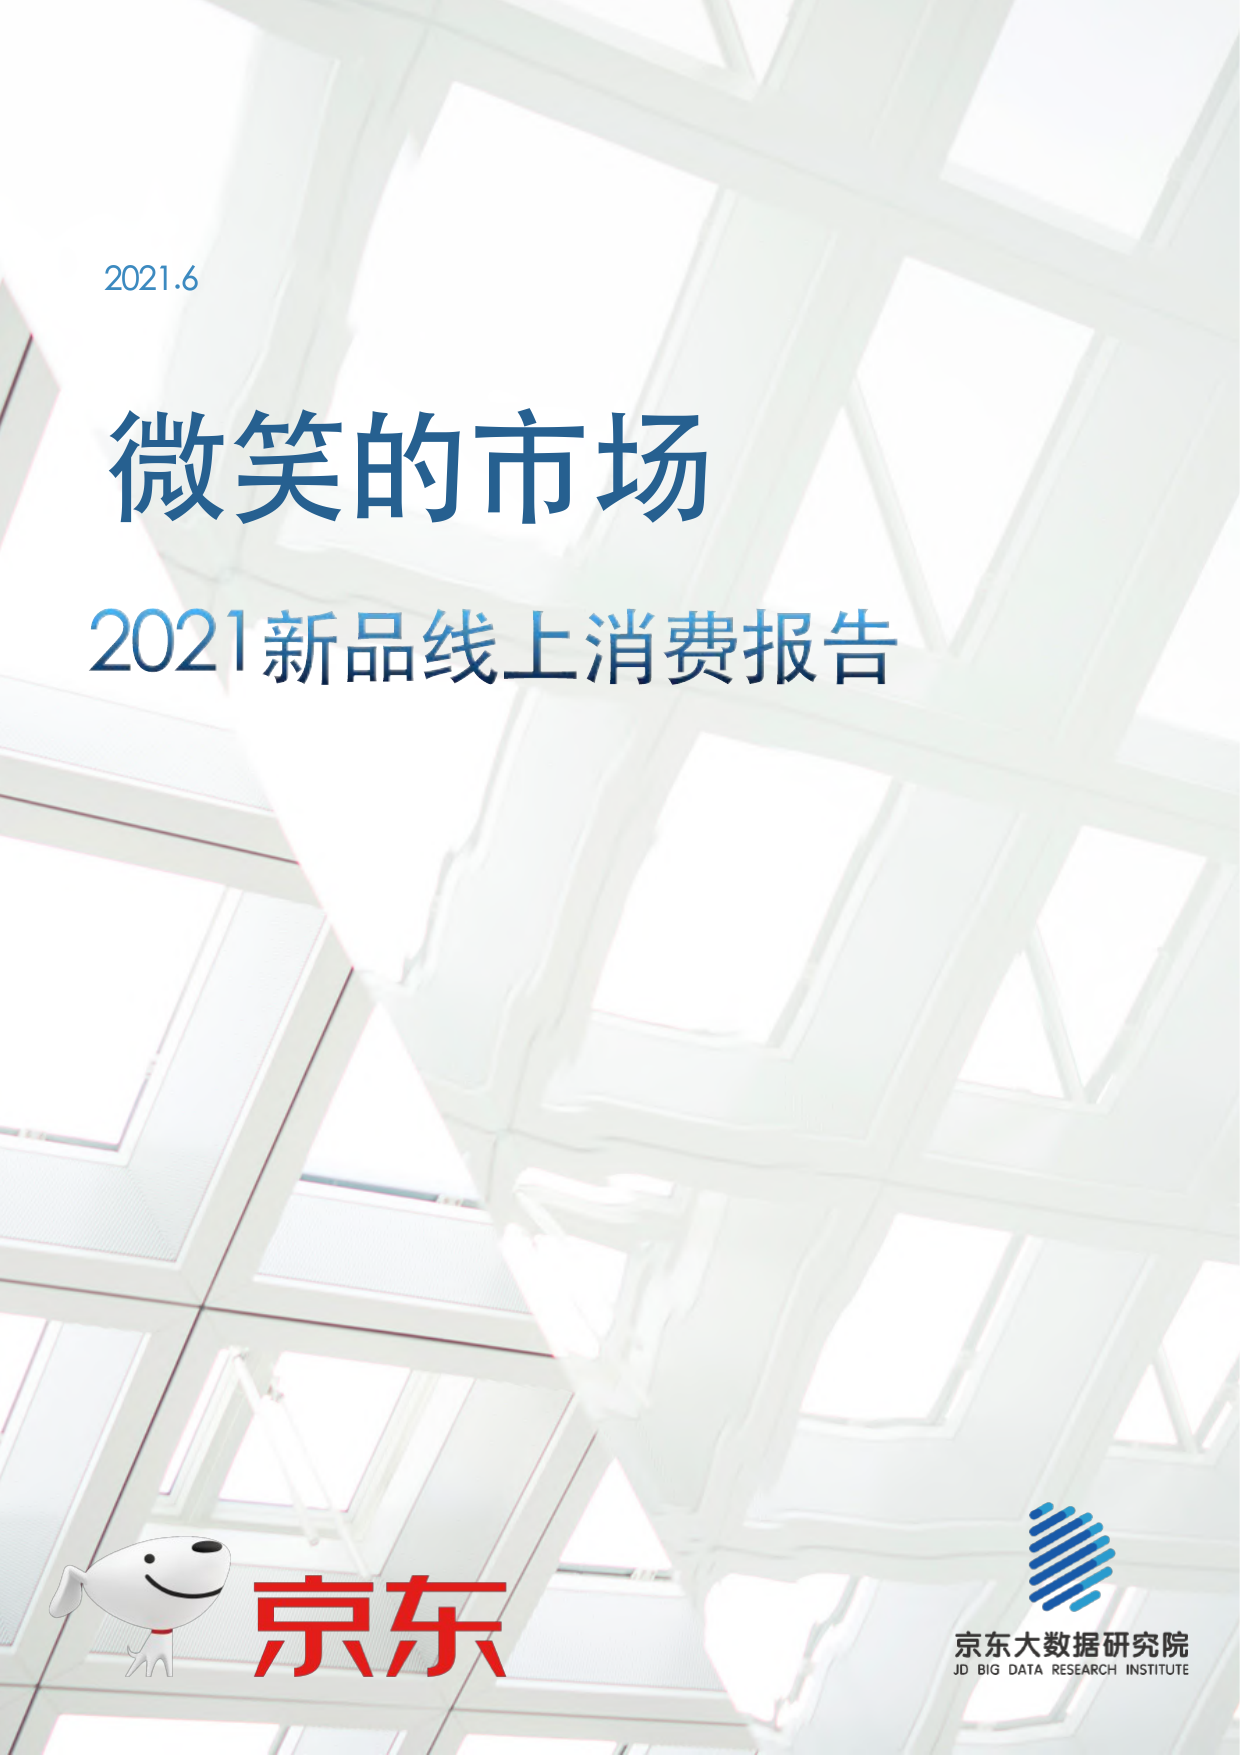 2021新品线上消费报告-京东-2021.6-28页